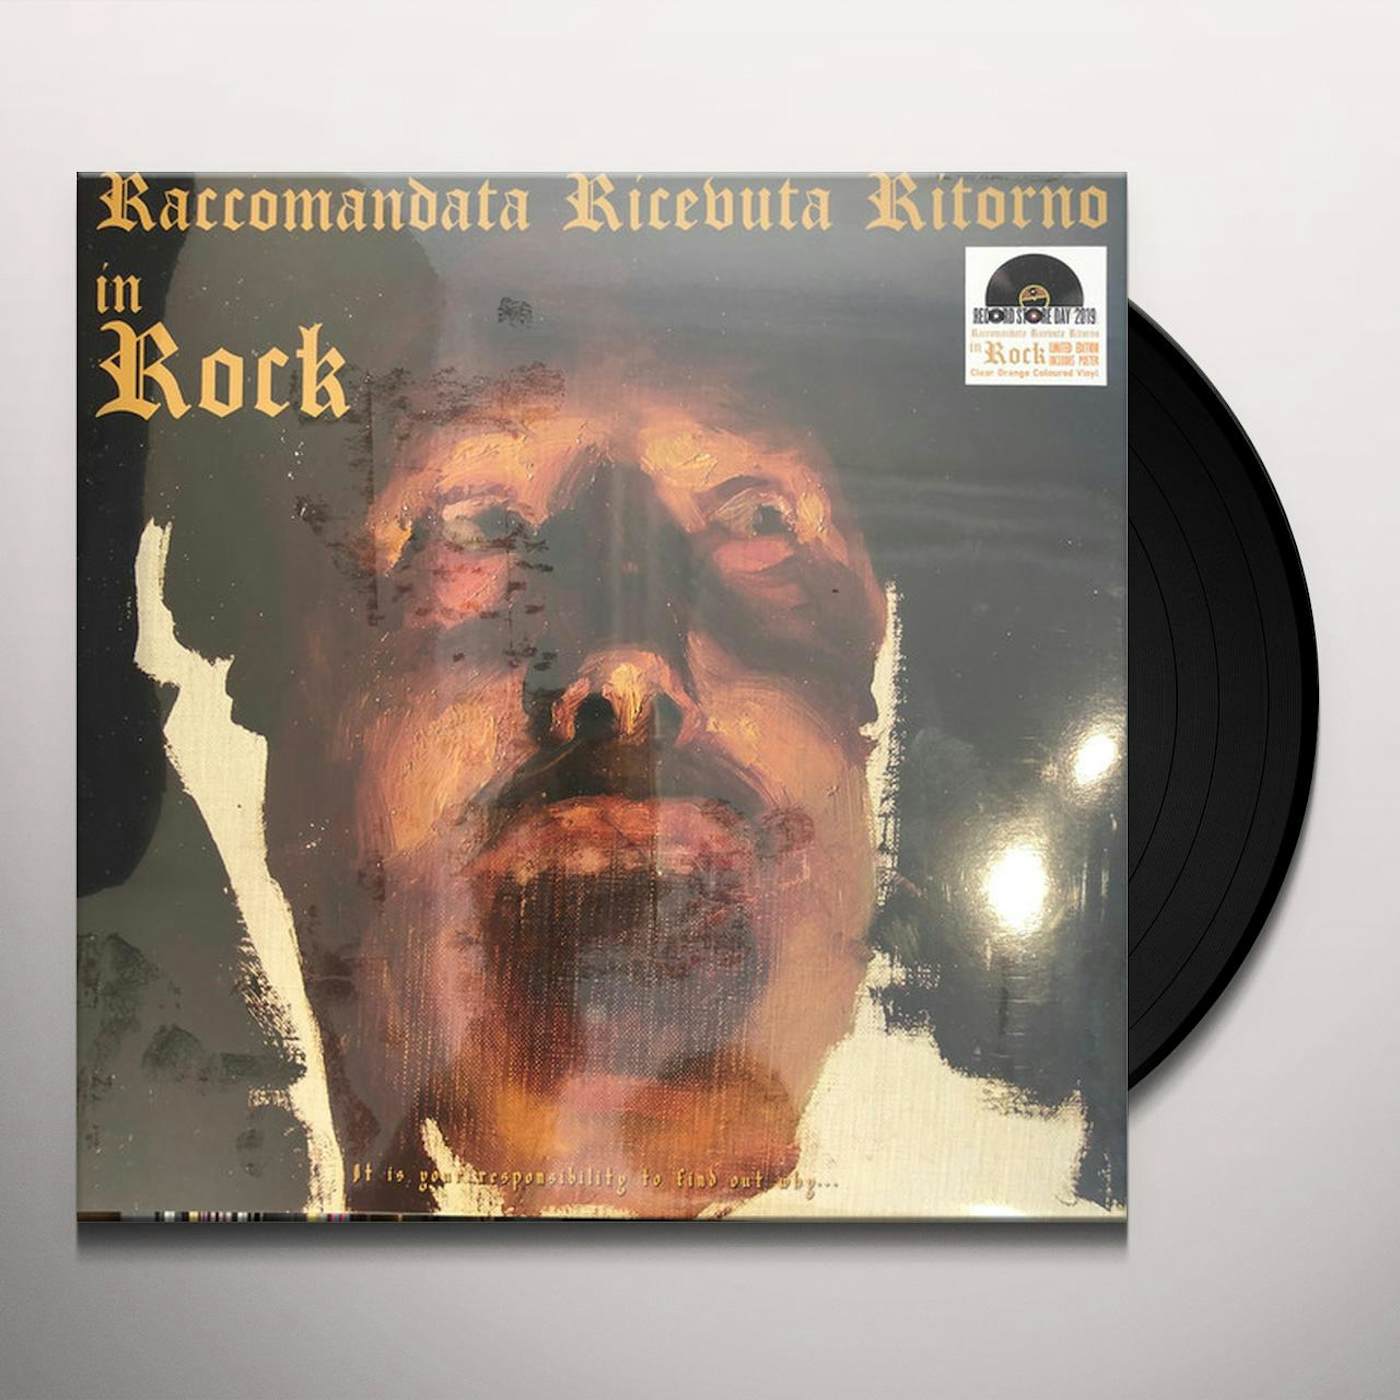 Raccomandata Ricevuta Ritorno In Rock Vinyl Record